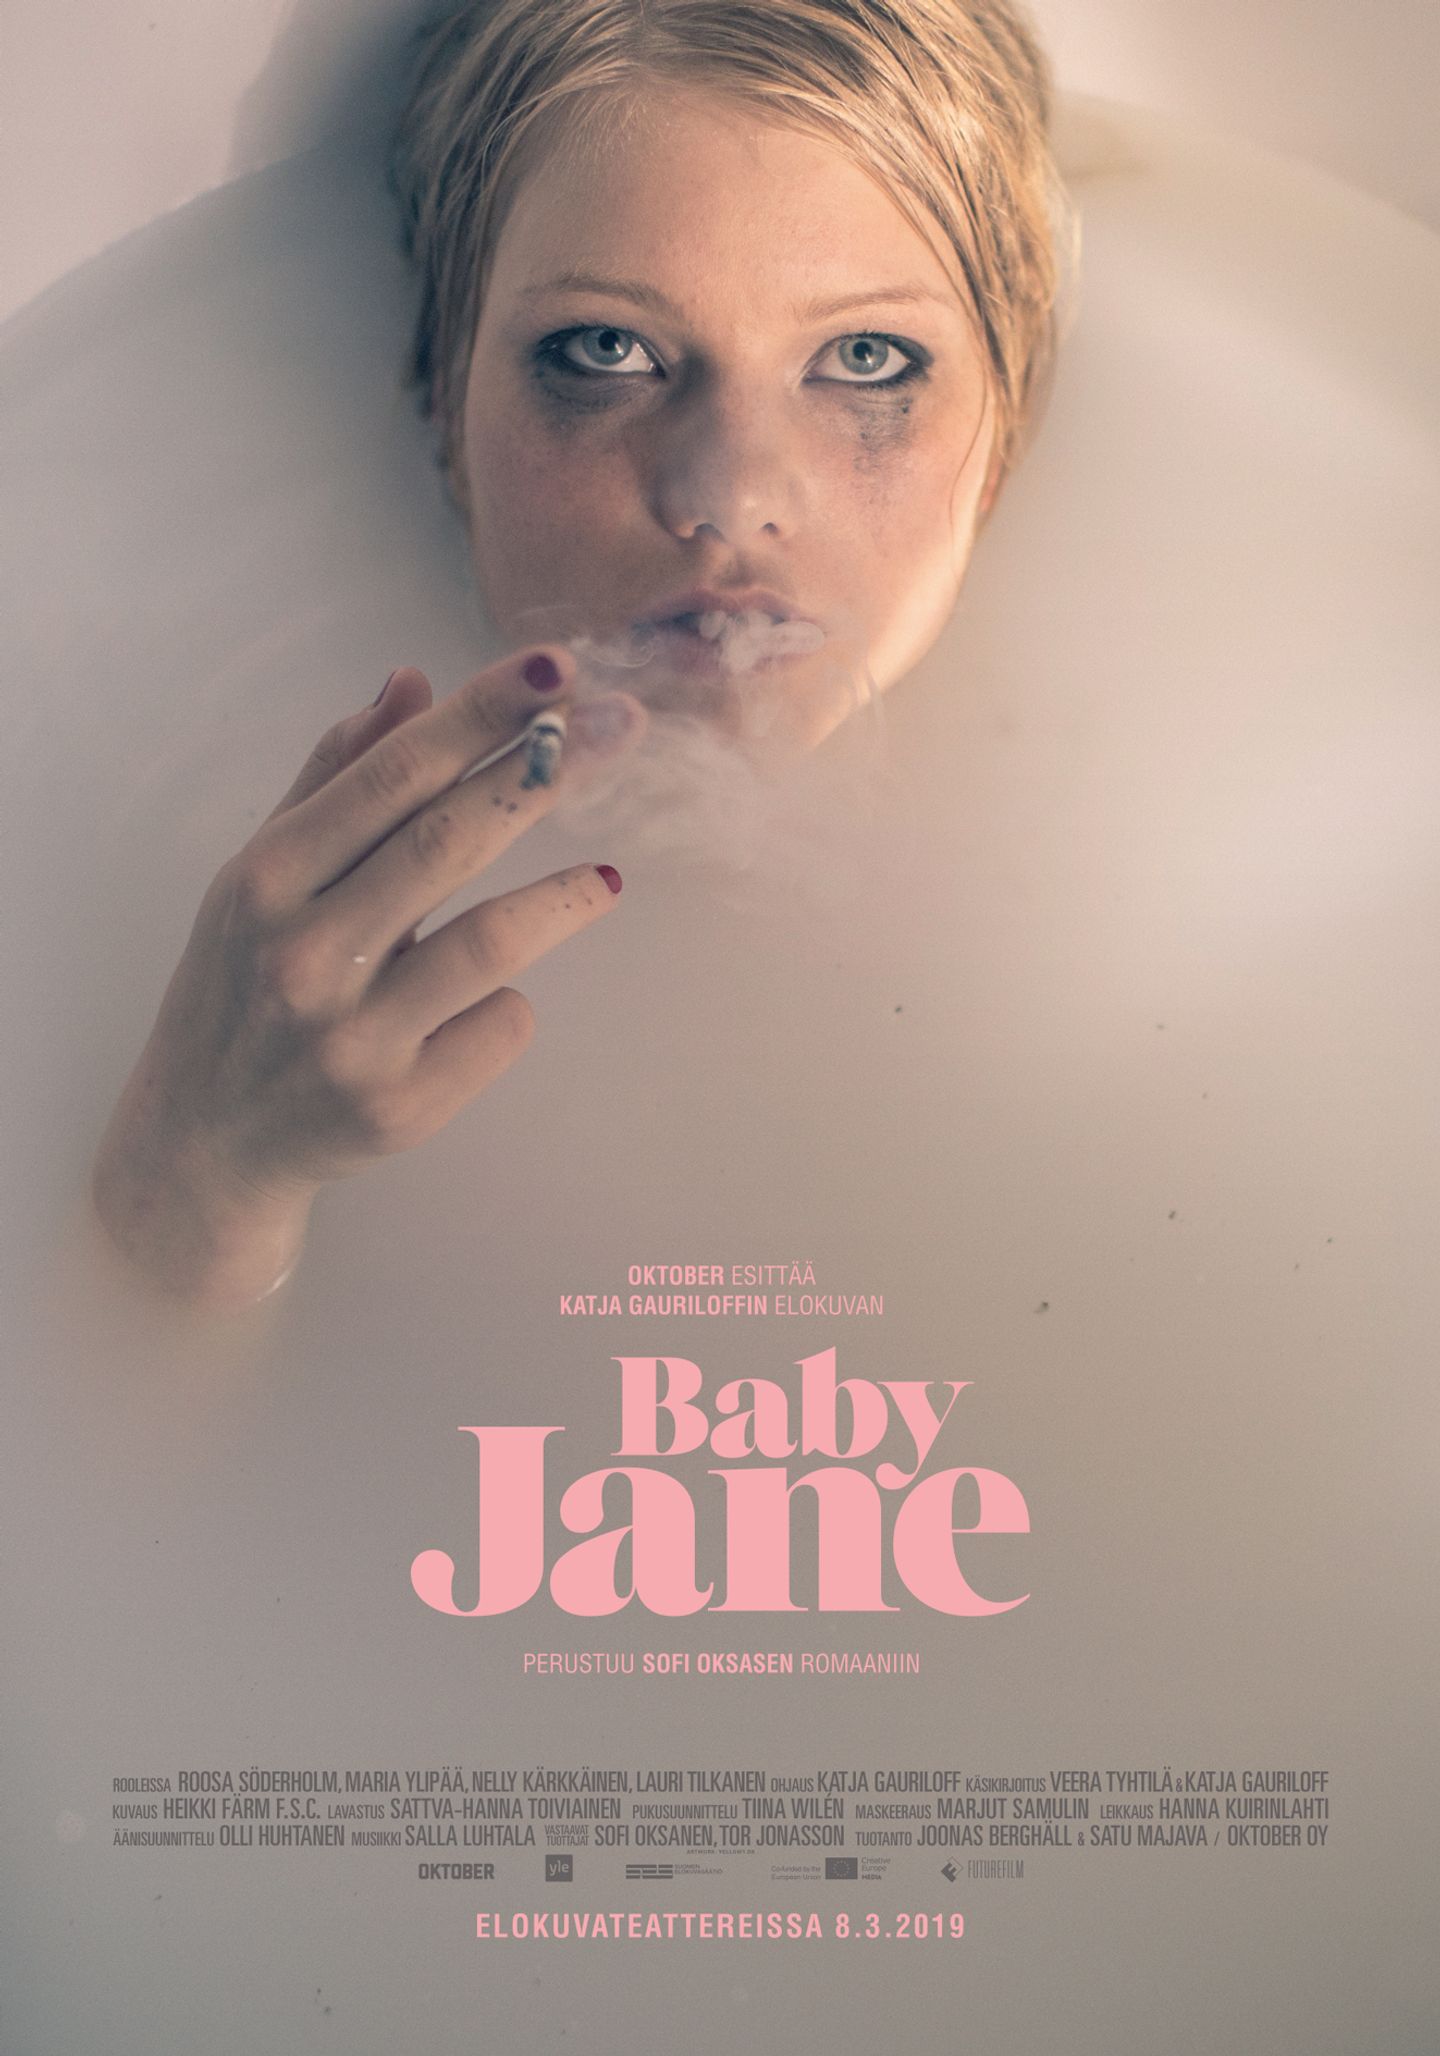 Plakat for 'Baby Jane'